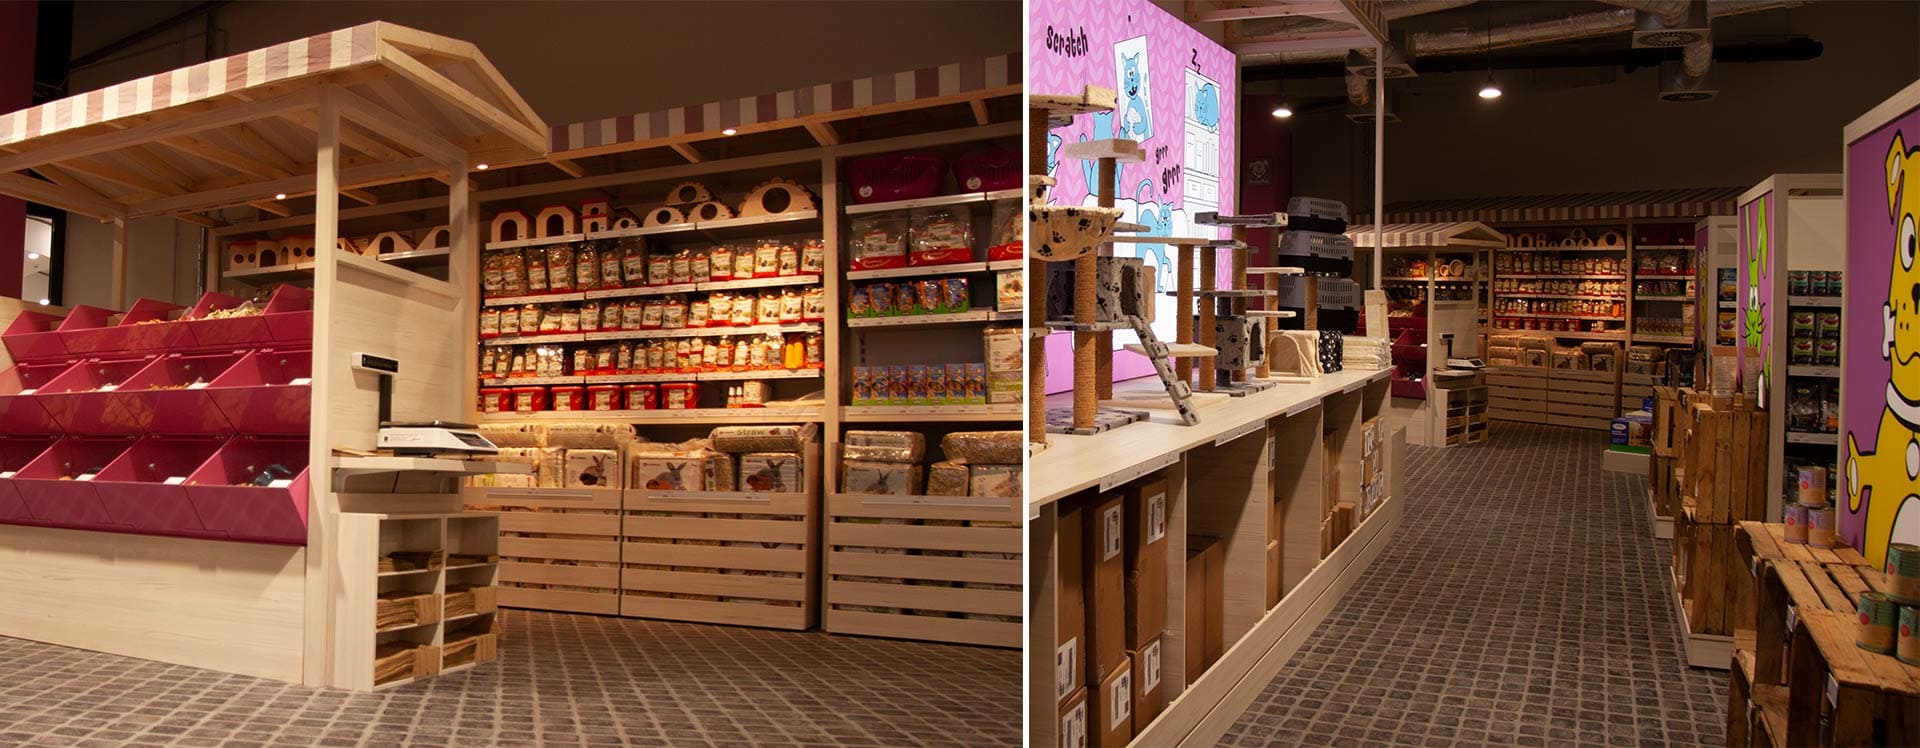 Der Ladenbauexperte Gerber hat das Ladenlokal designt und gebaut.